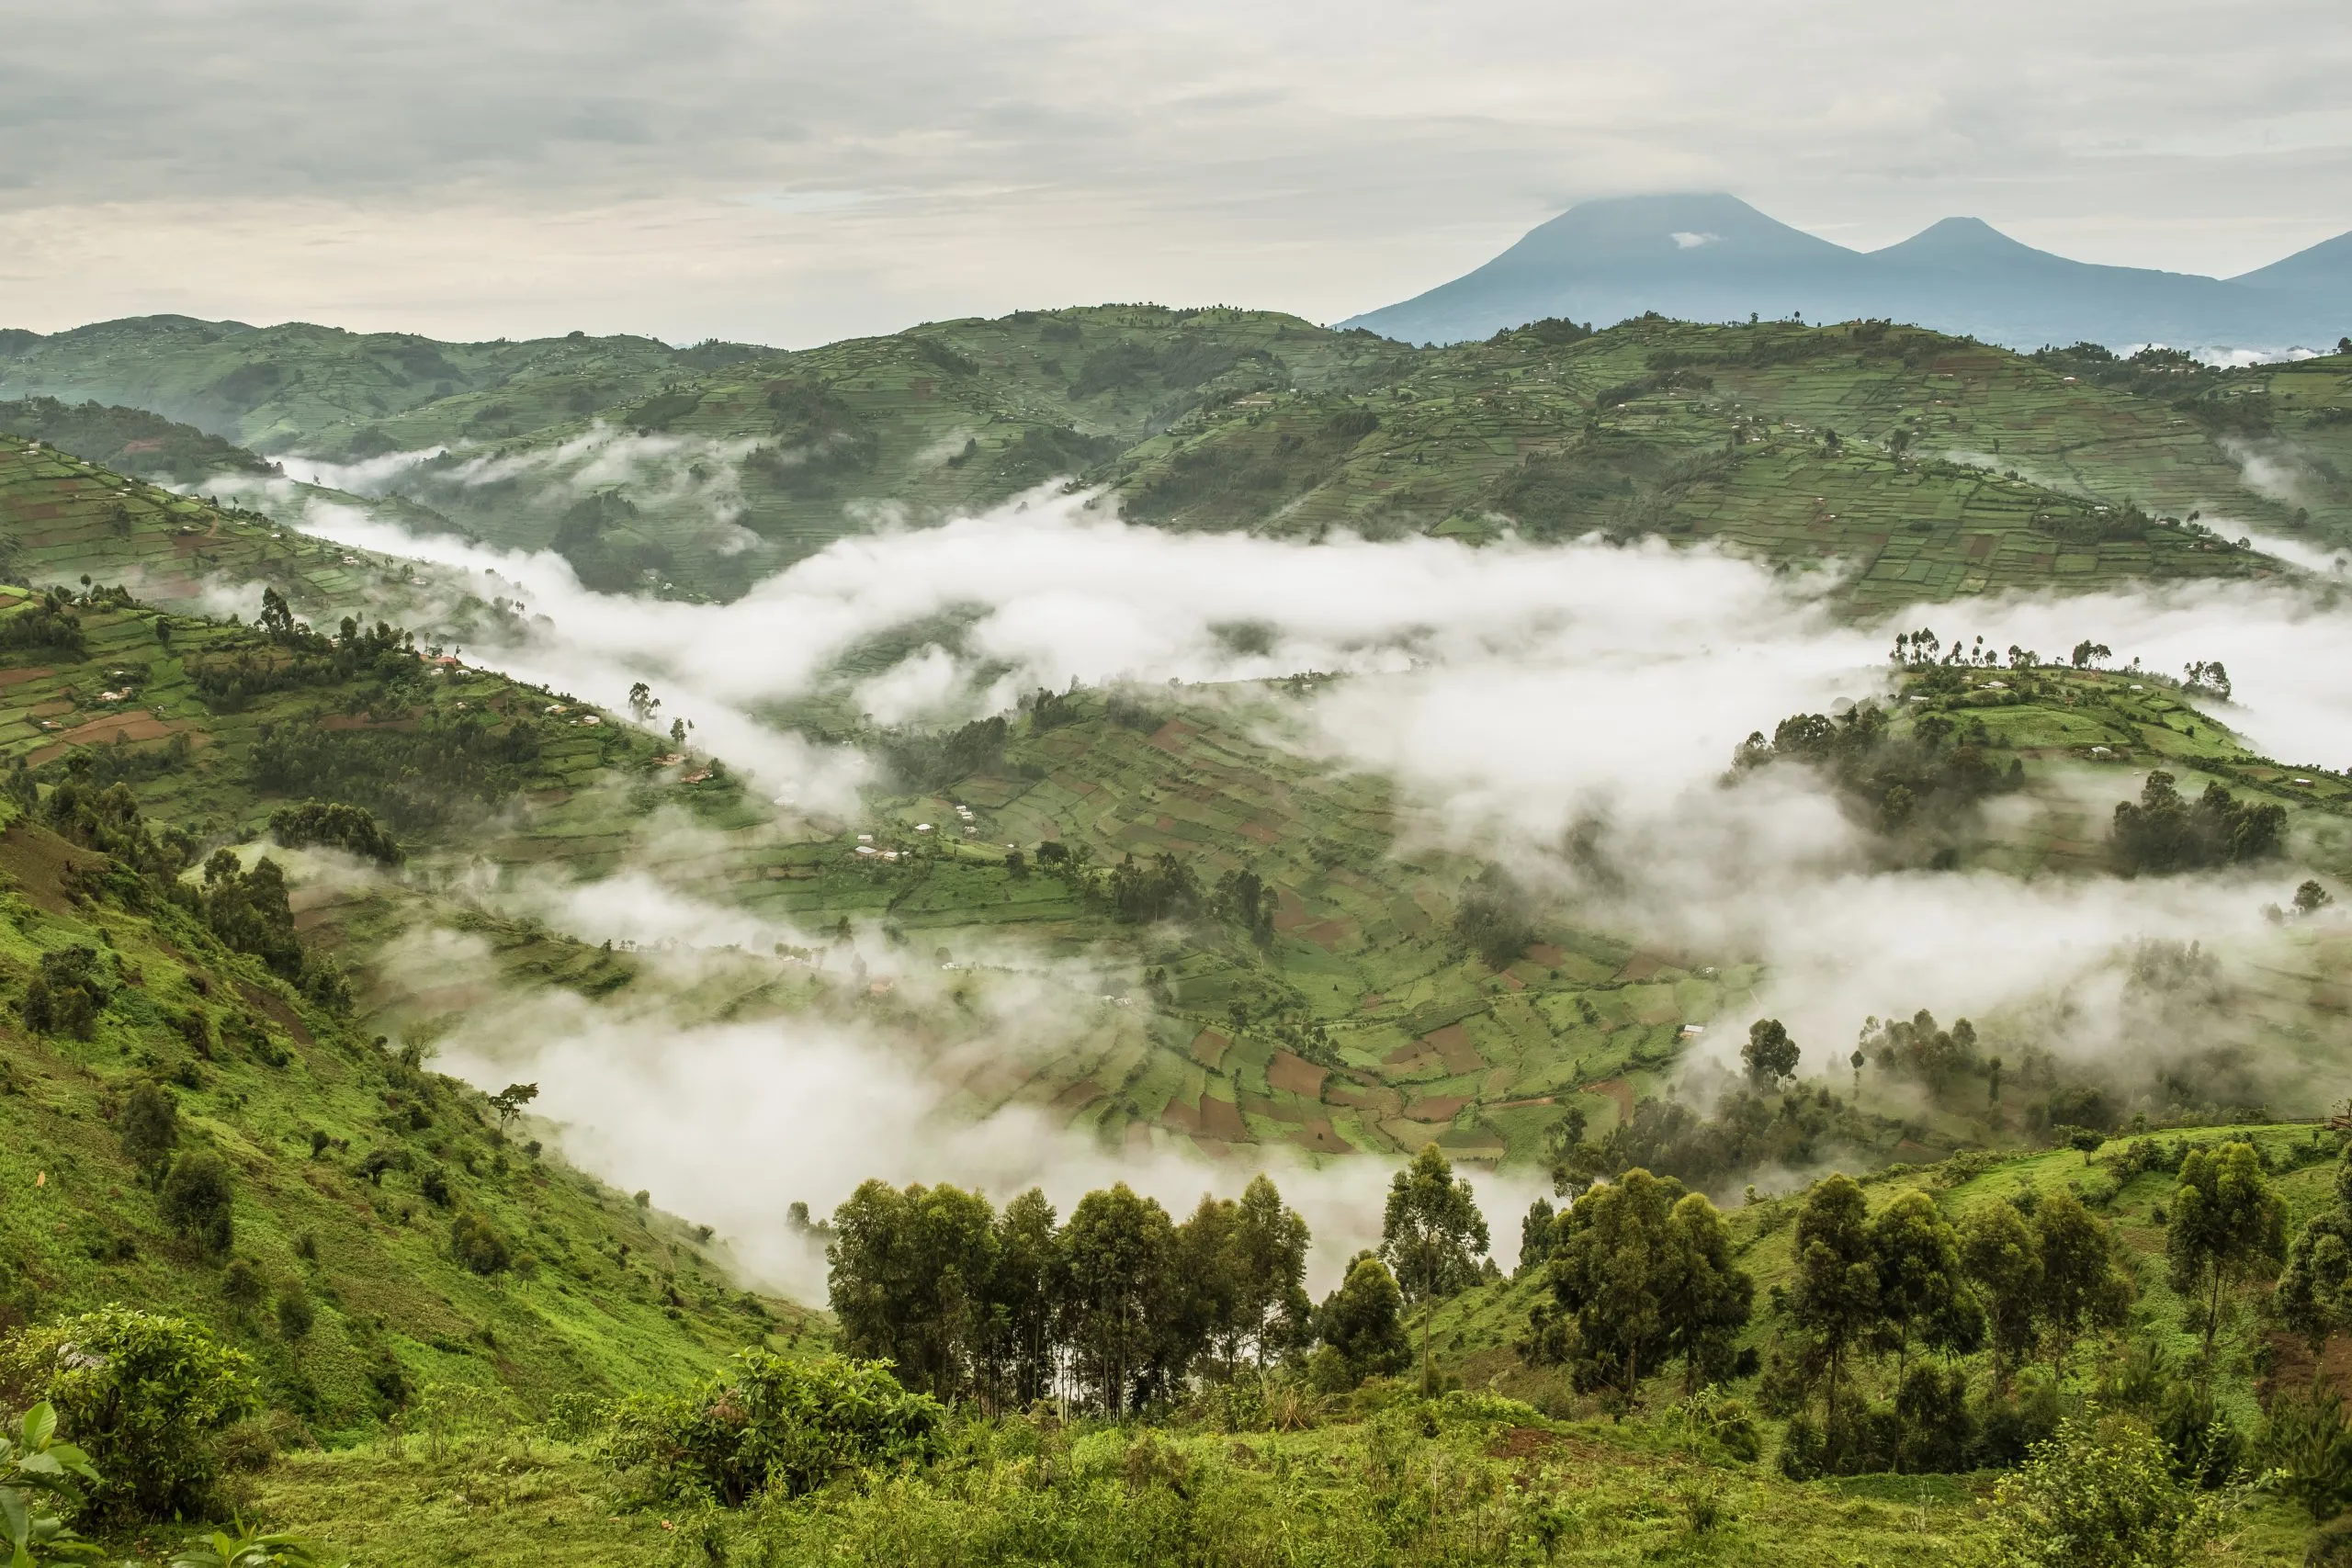 Paisagem típica de colinas cheias de campos parcialmente cobertos de nevoeiro perto do Parque Nacional Impenetrável de Bwindi, no Uganda